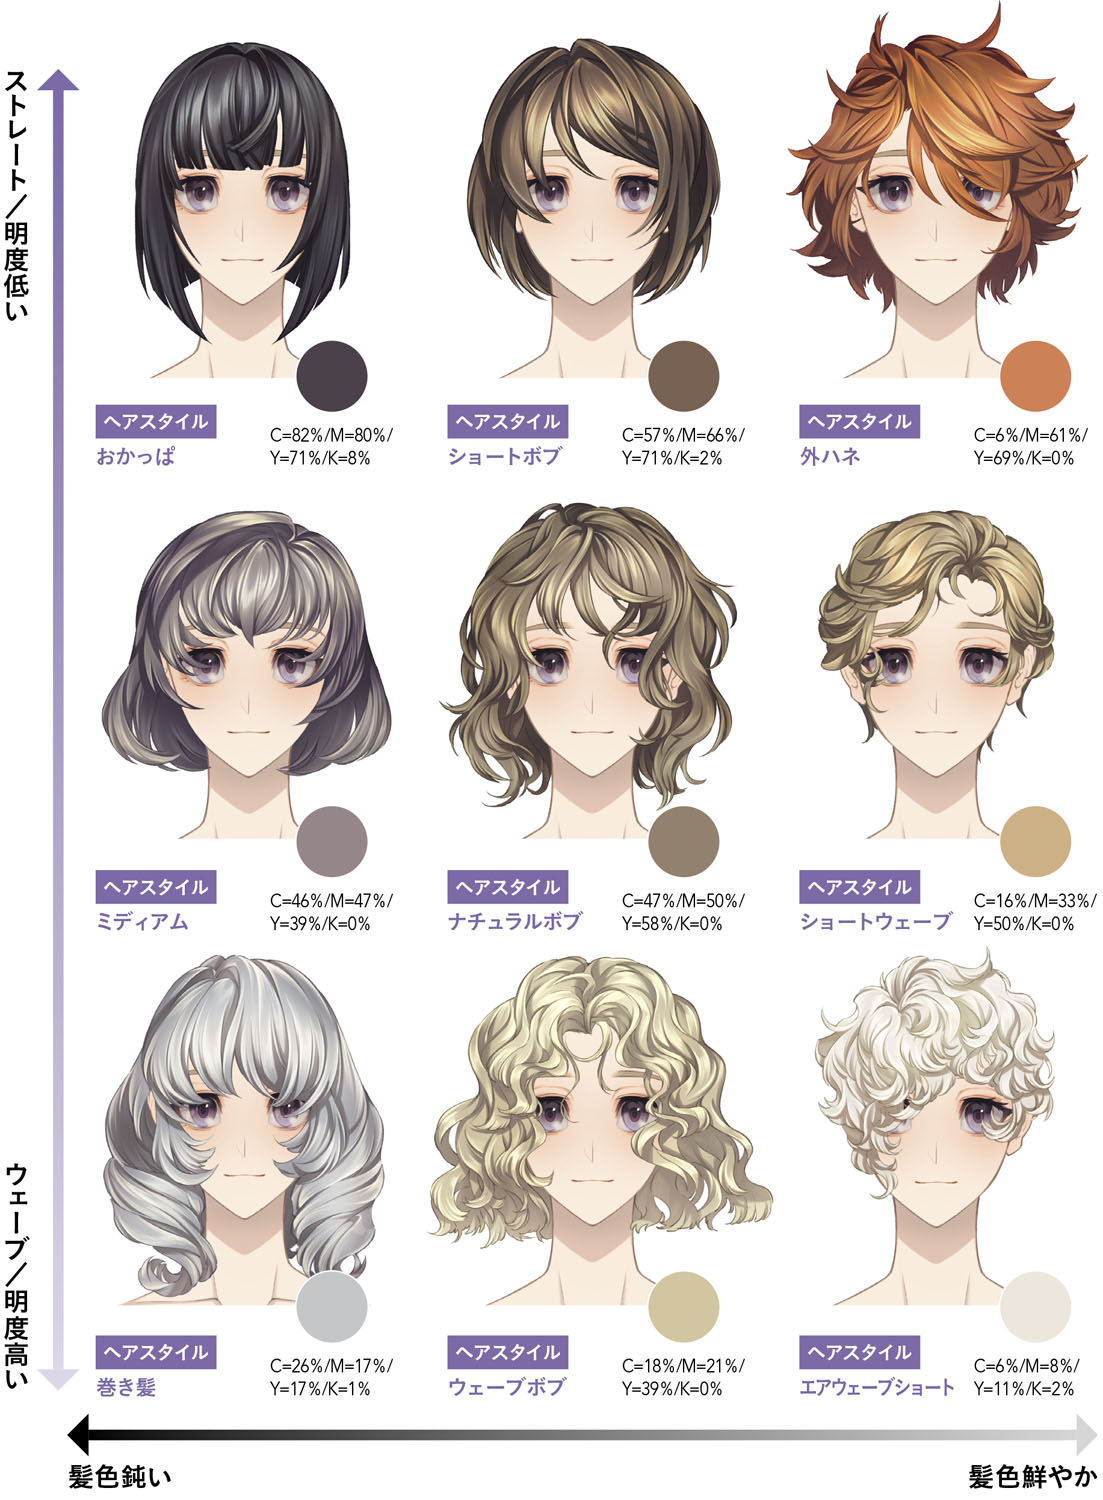 キャラクターの第一印象を決定づける 髪型と髪色 比較作例 キャラクターの色の塗り方 新装版 第6回 Pictures